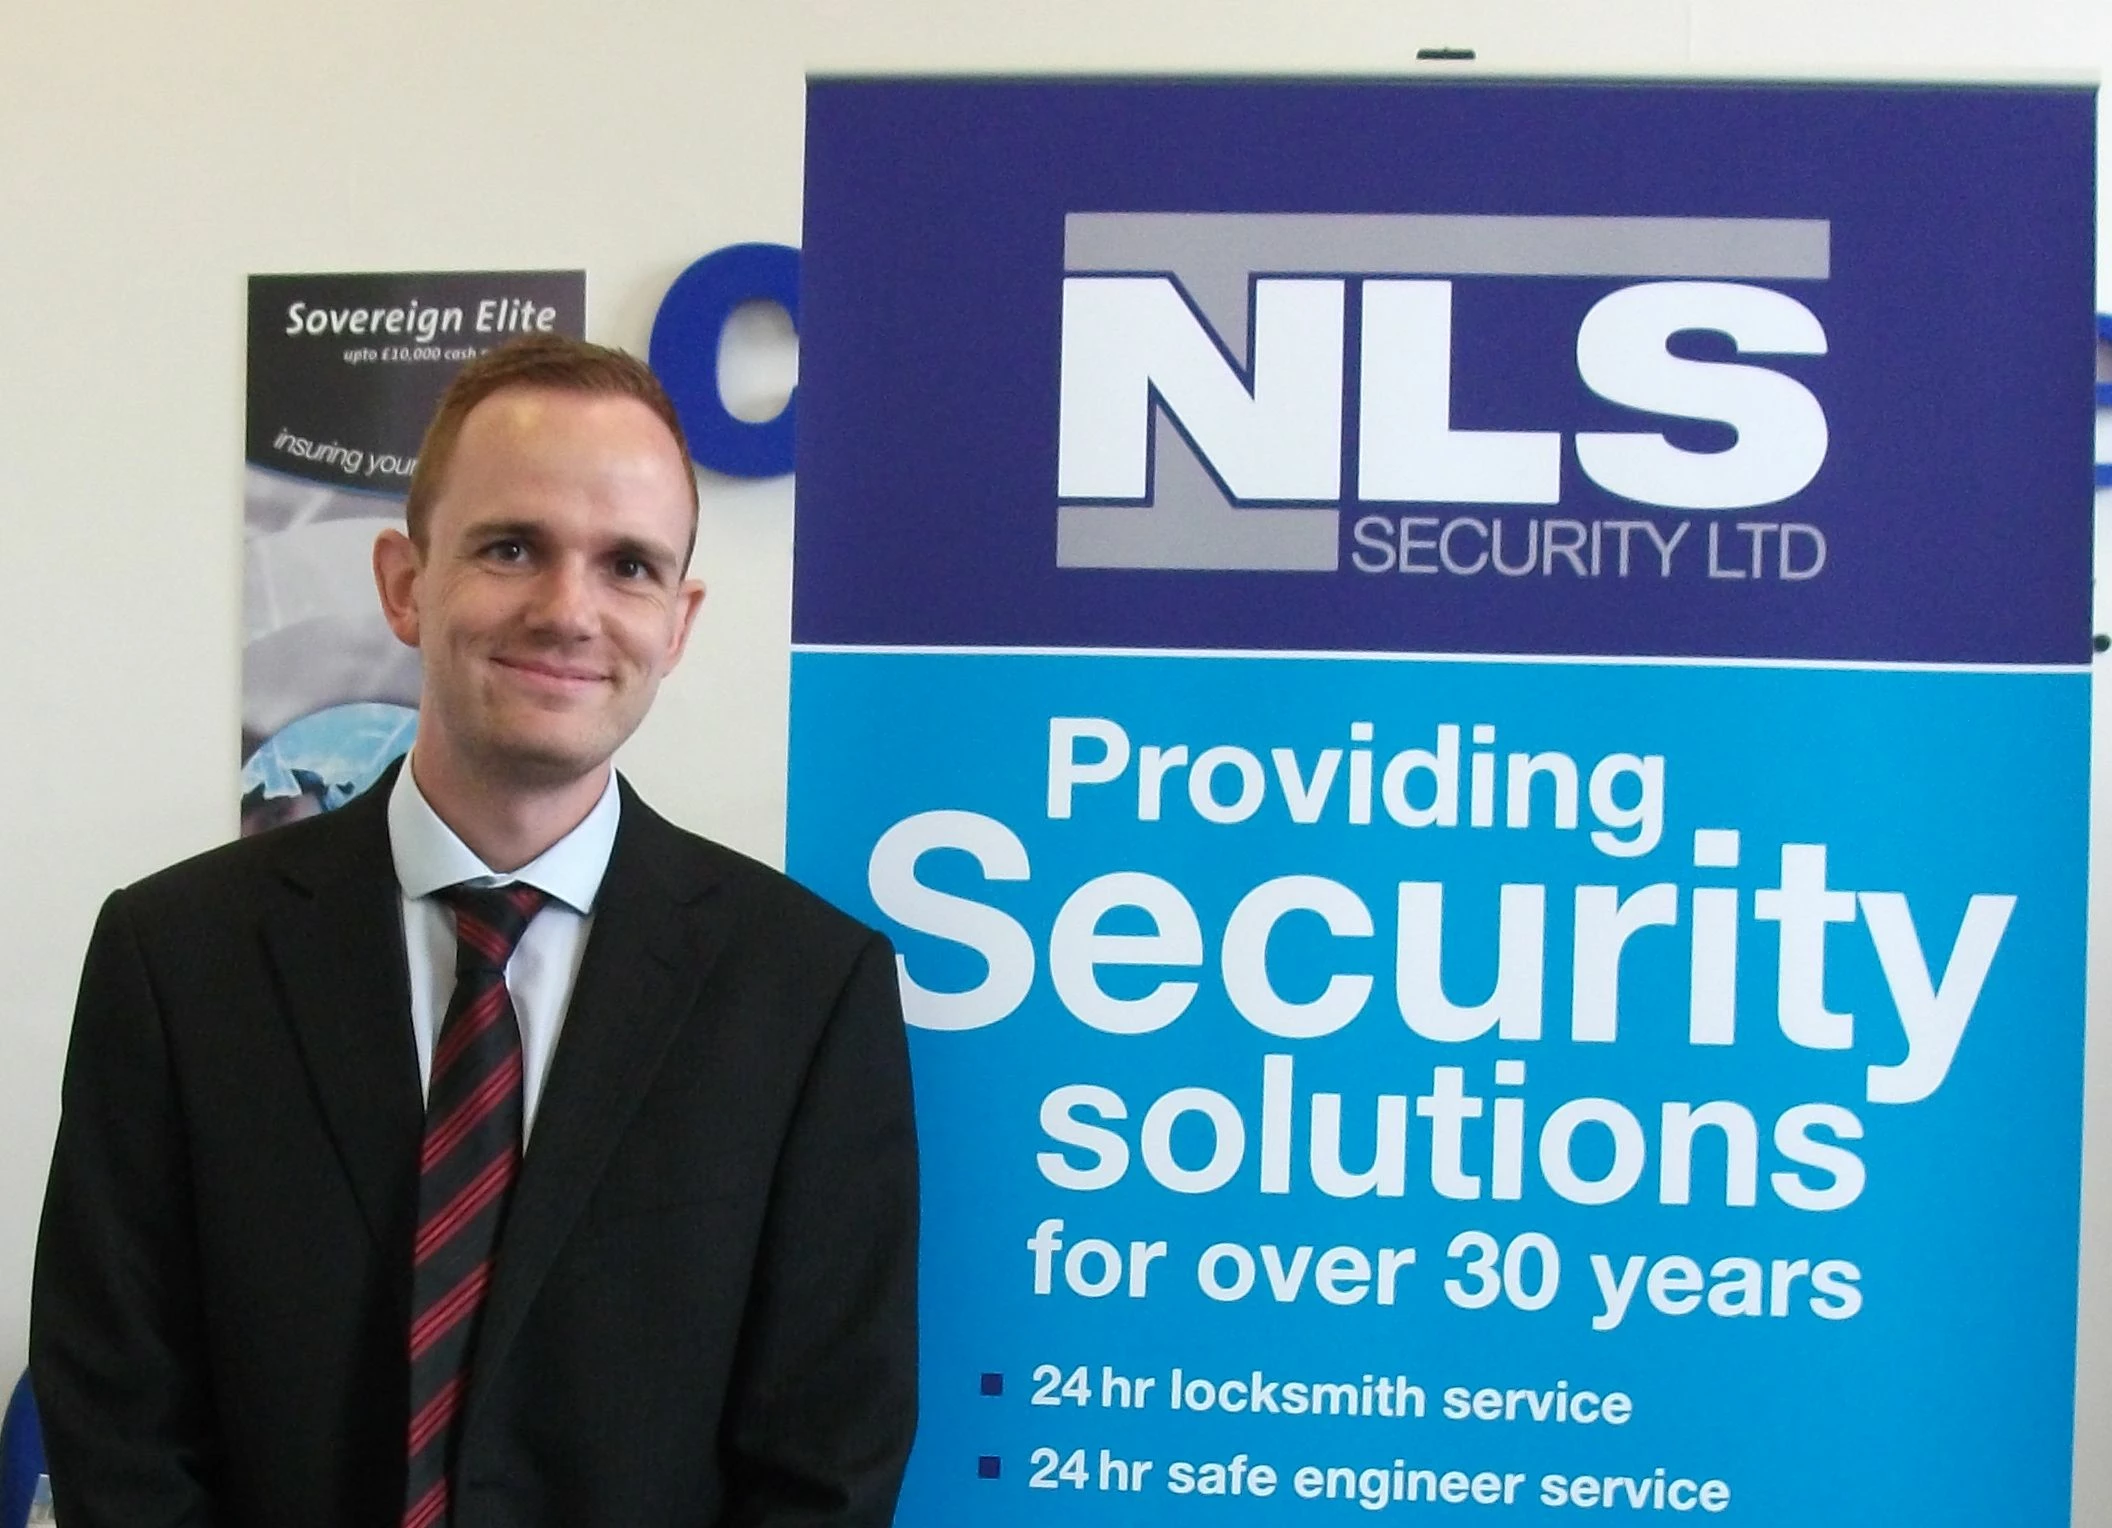 NLS Security Ltd